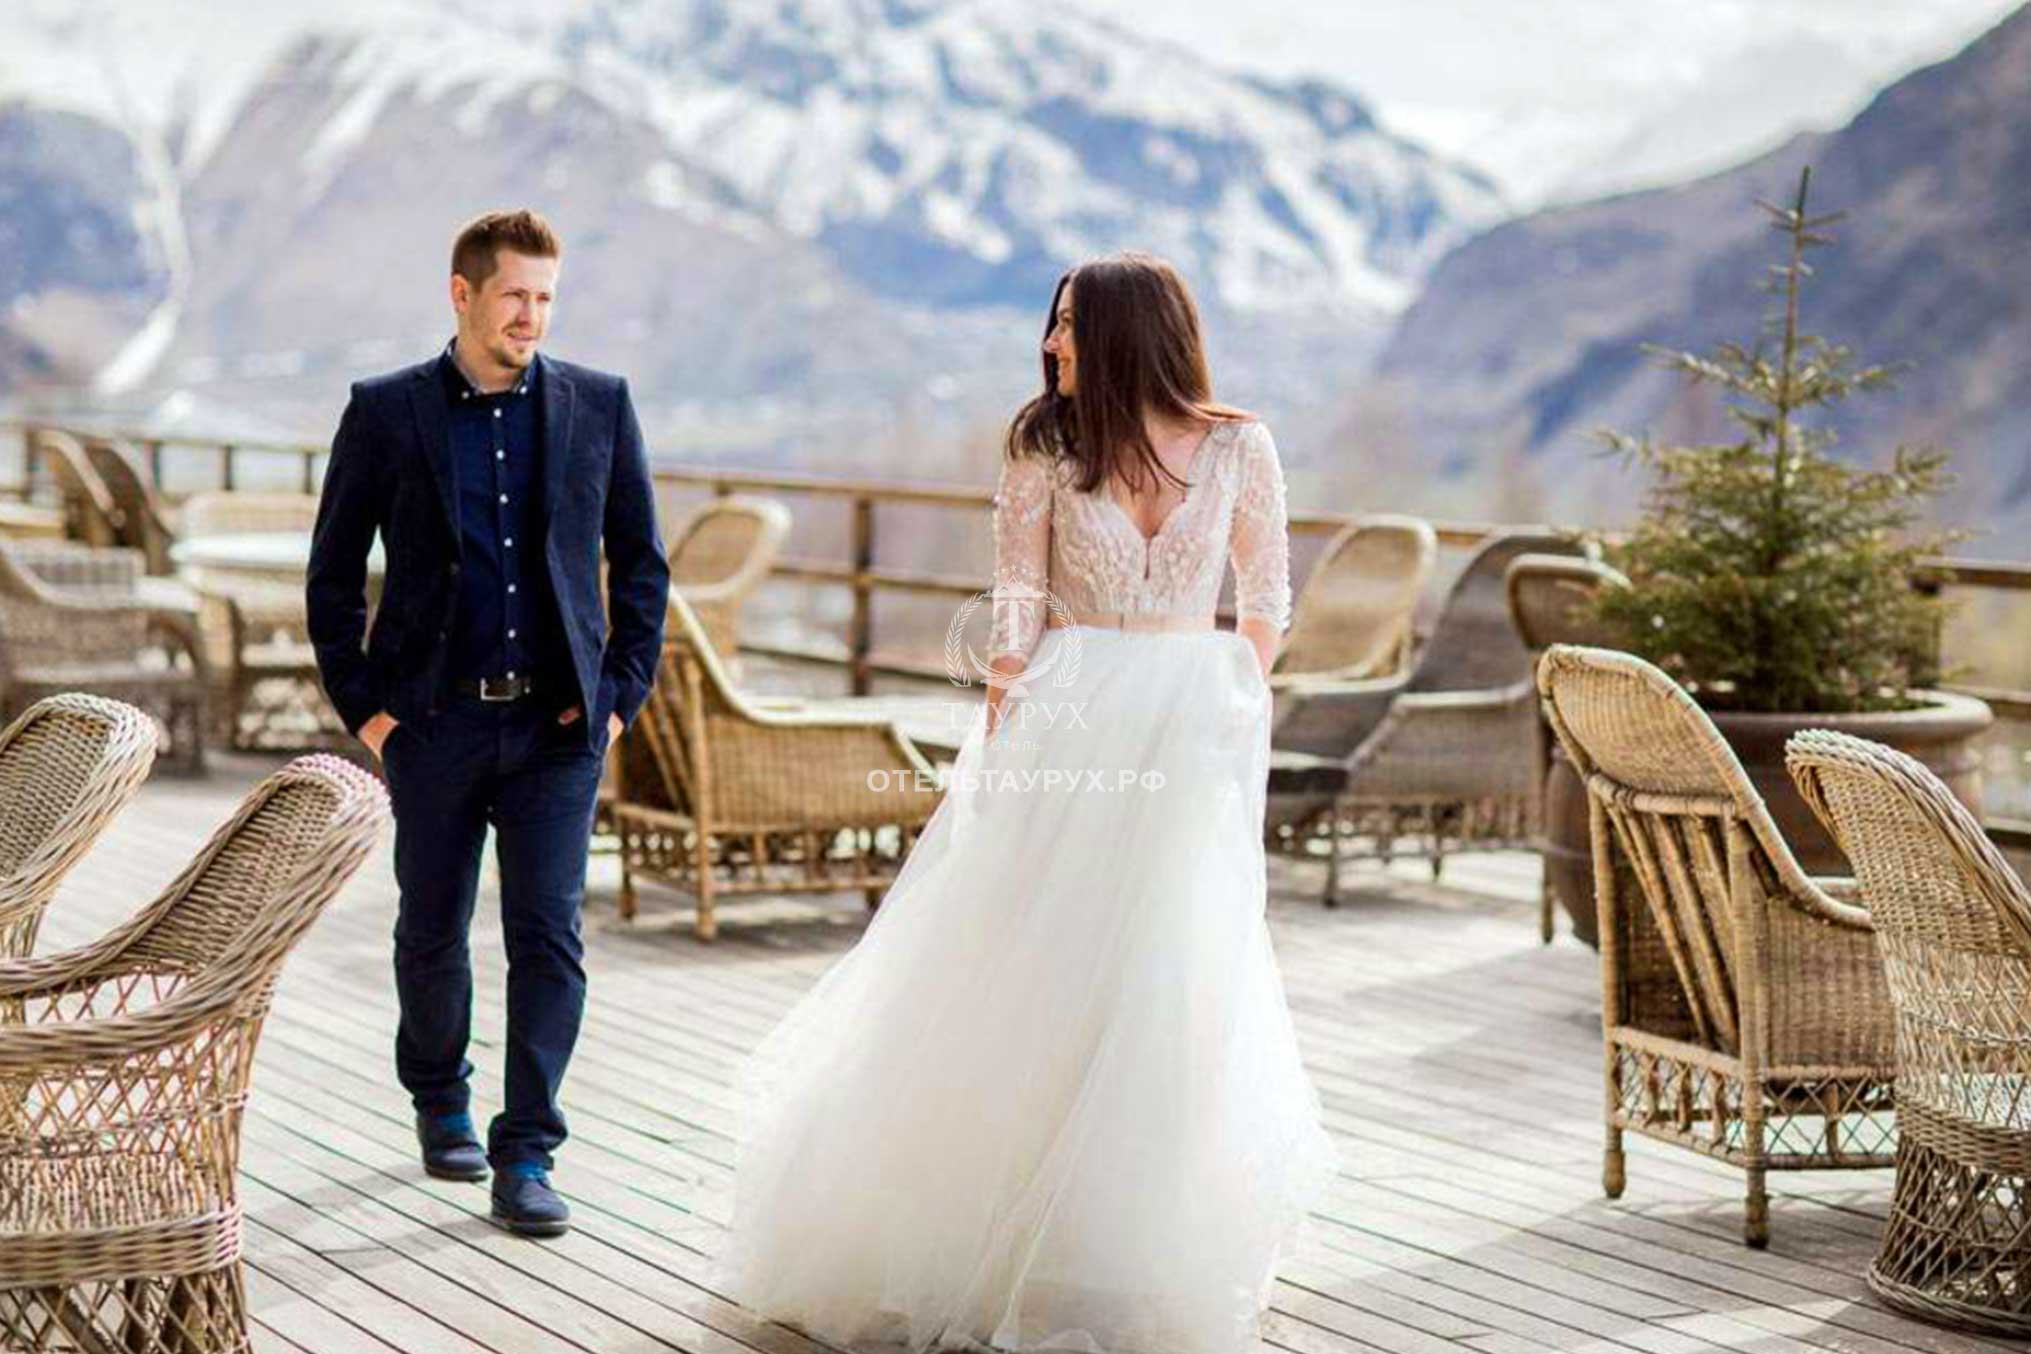 Свадьба в горах / ТАУРУХ- отель на горнолыжном курорте Домбай.